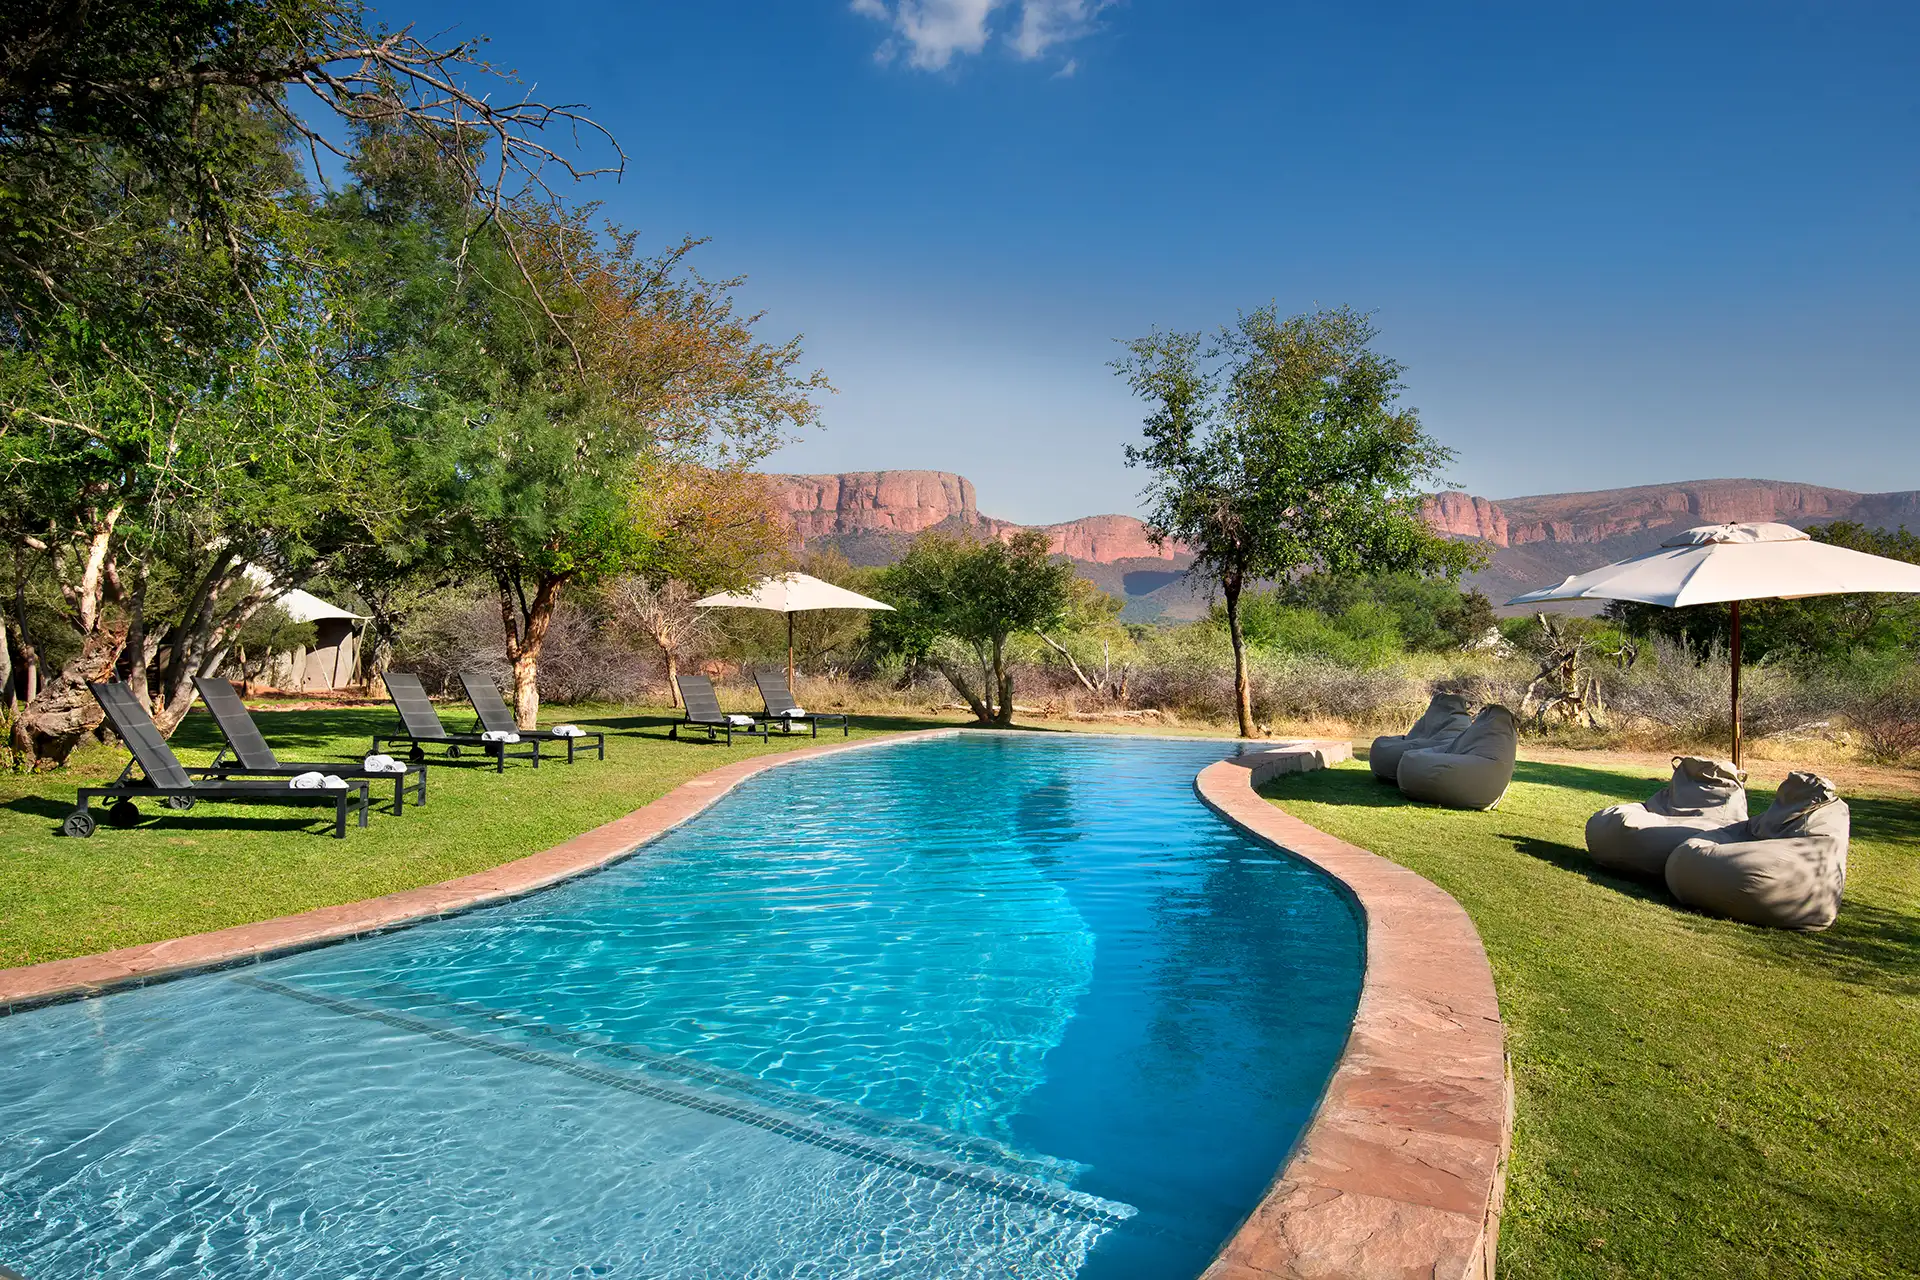 Pool einer Luxus Lodge im afrikanischen Busch